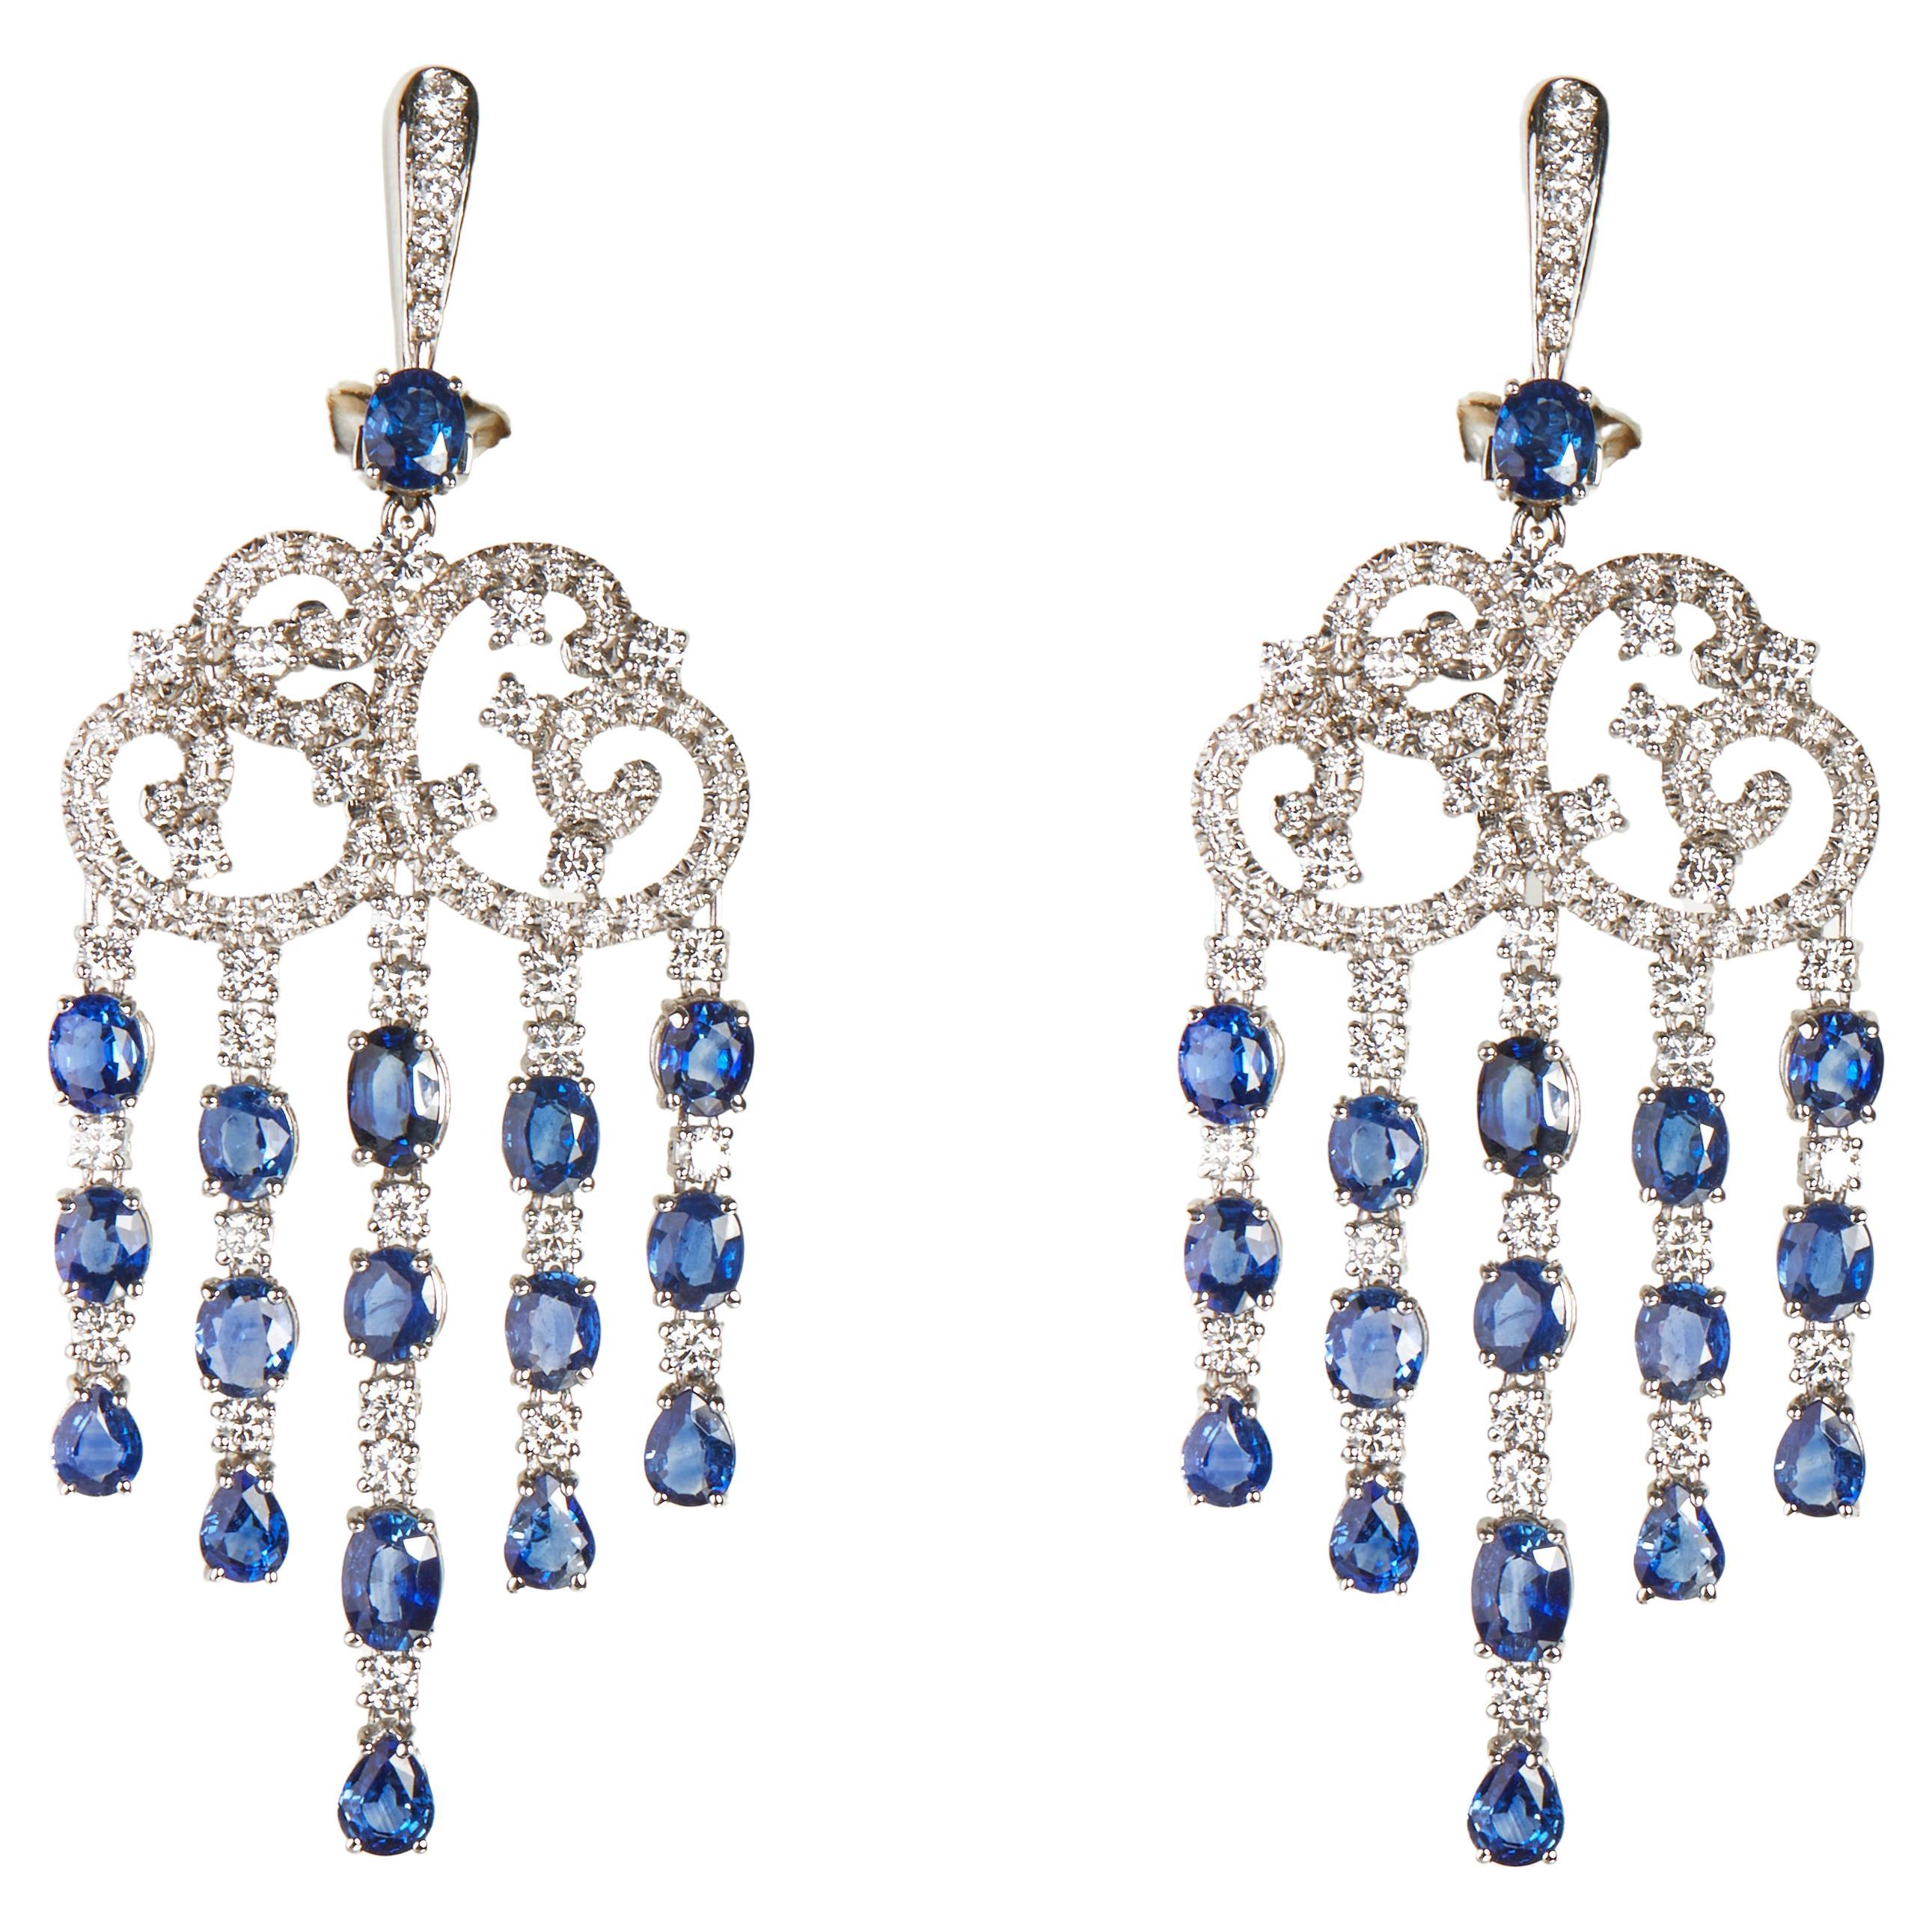 Gianni Lazzaro Blue Sapphire White 18K Gold Diamond Earrings for Her